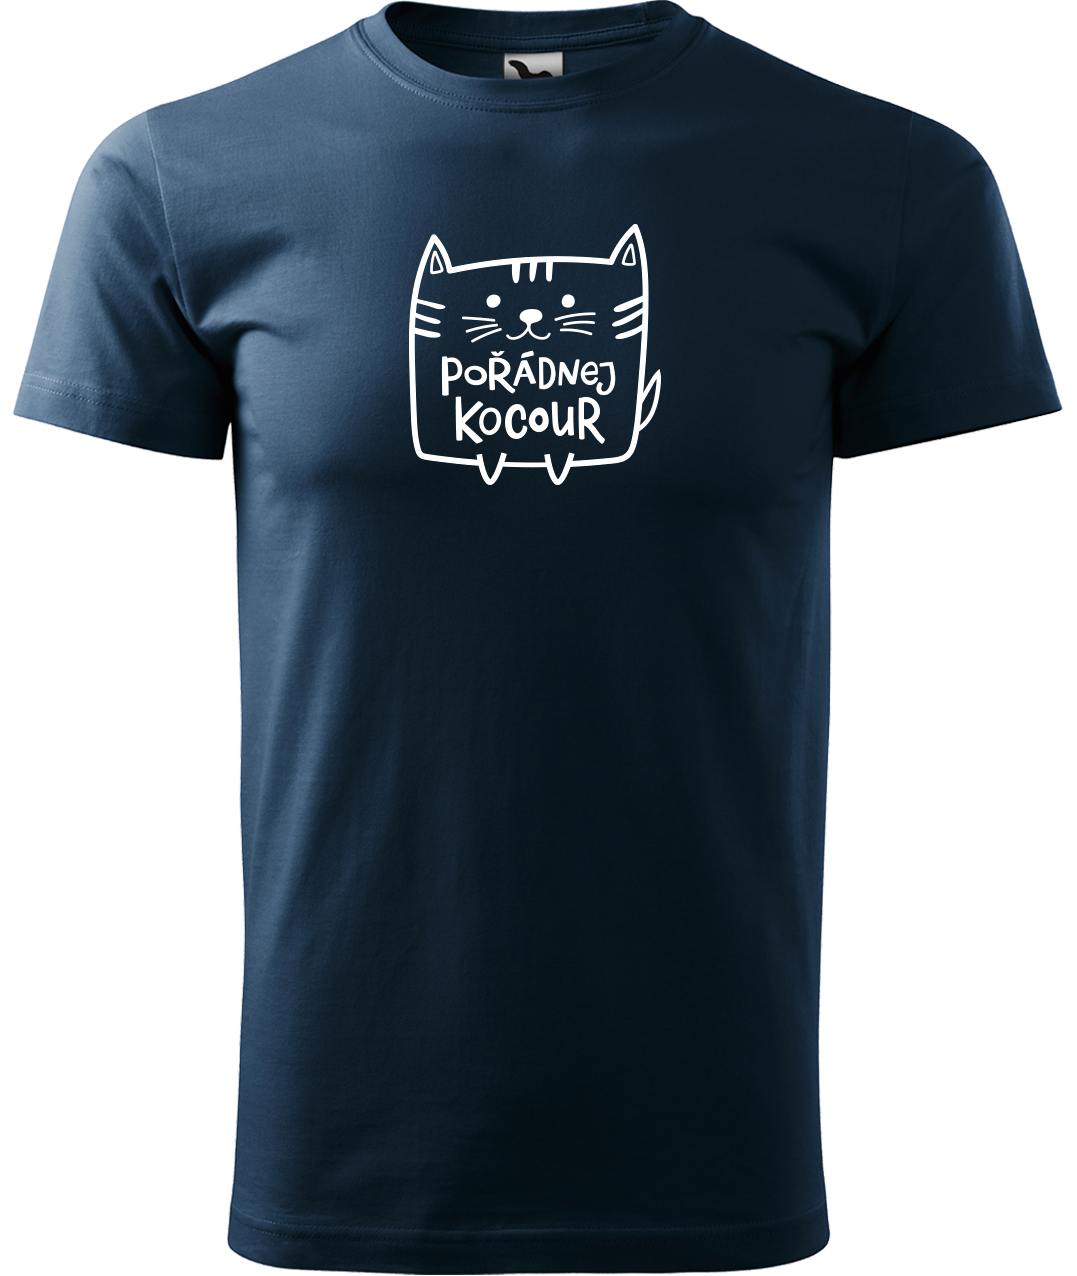 Pánské tričko s kočkou - Pořádnej kocour Velikost: 4XL, Barva: Námořní modrá (02)